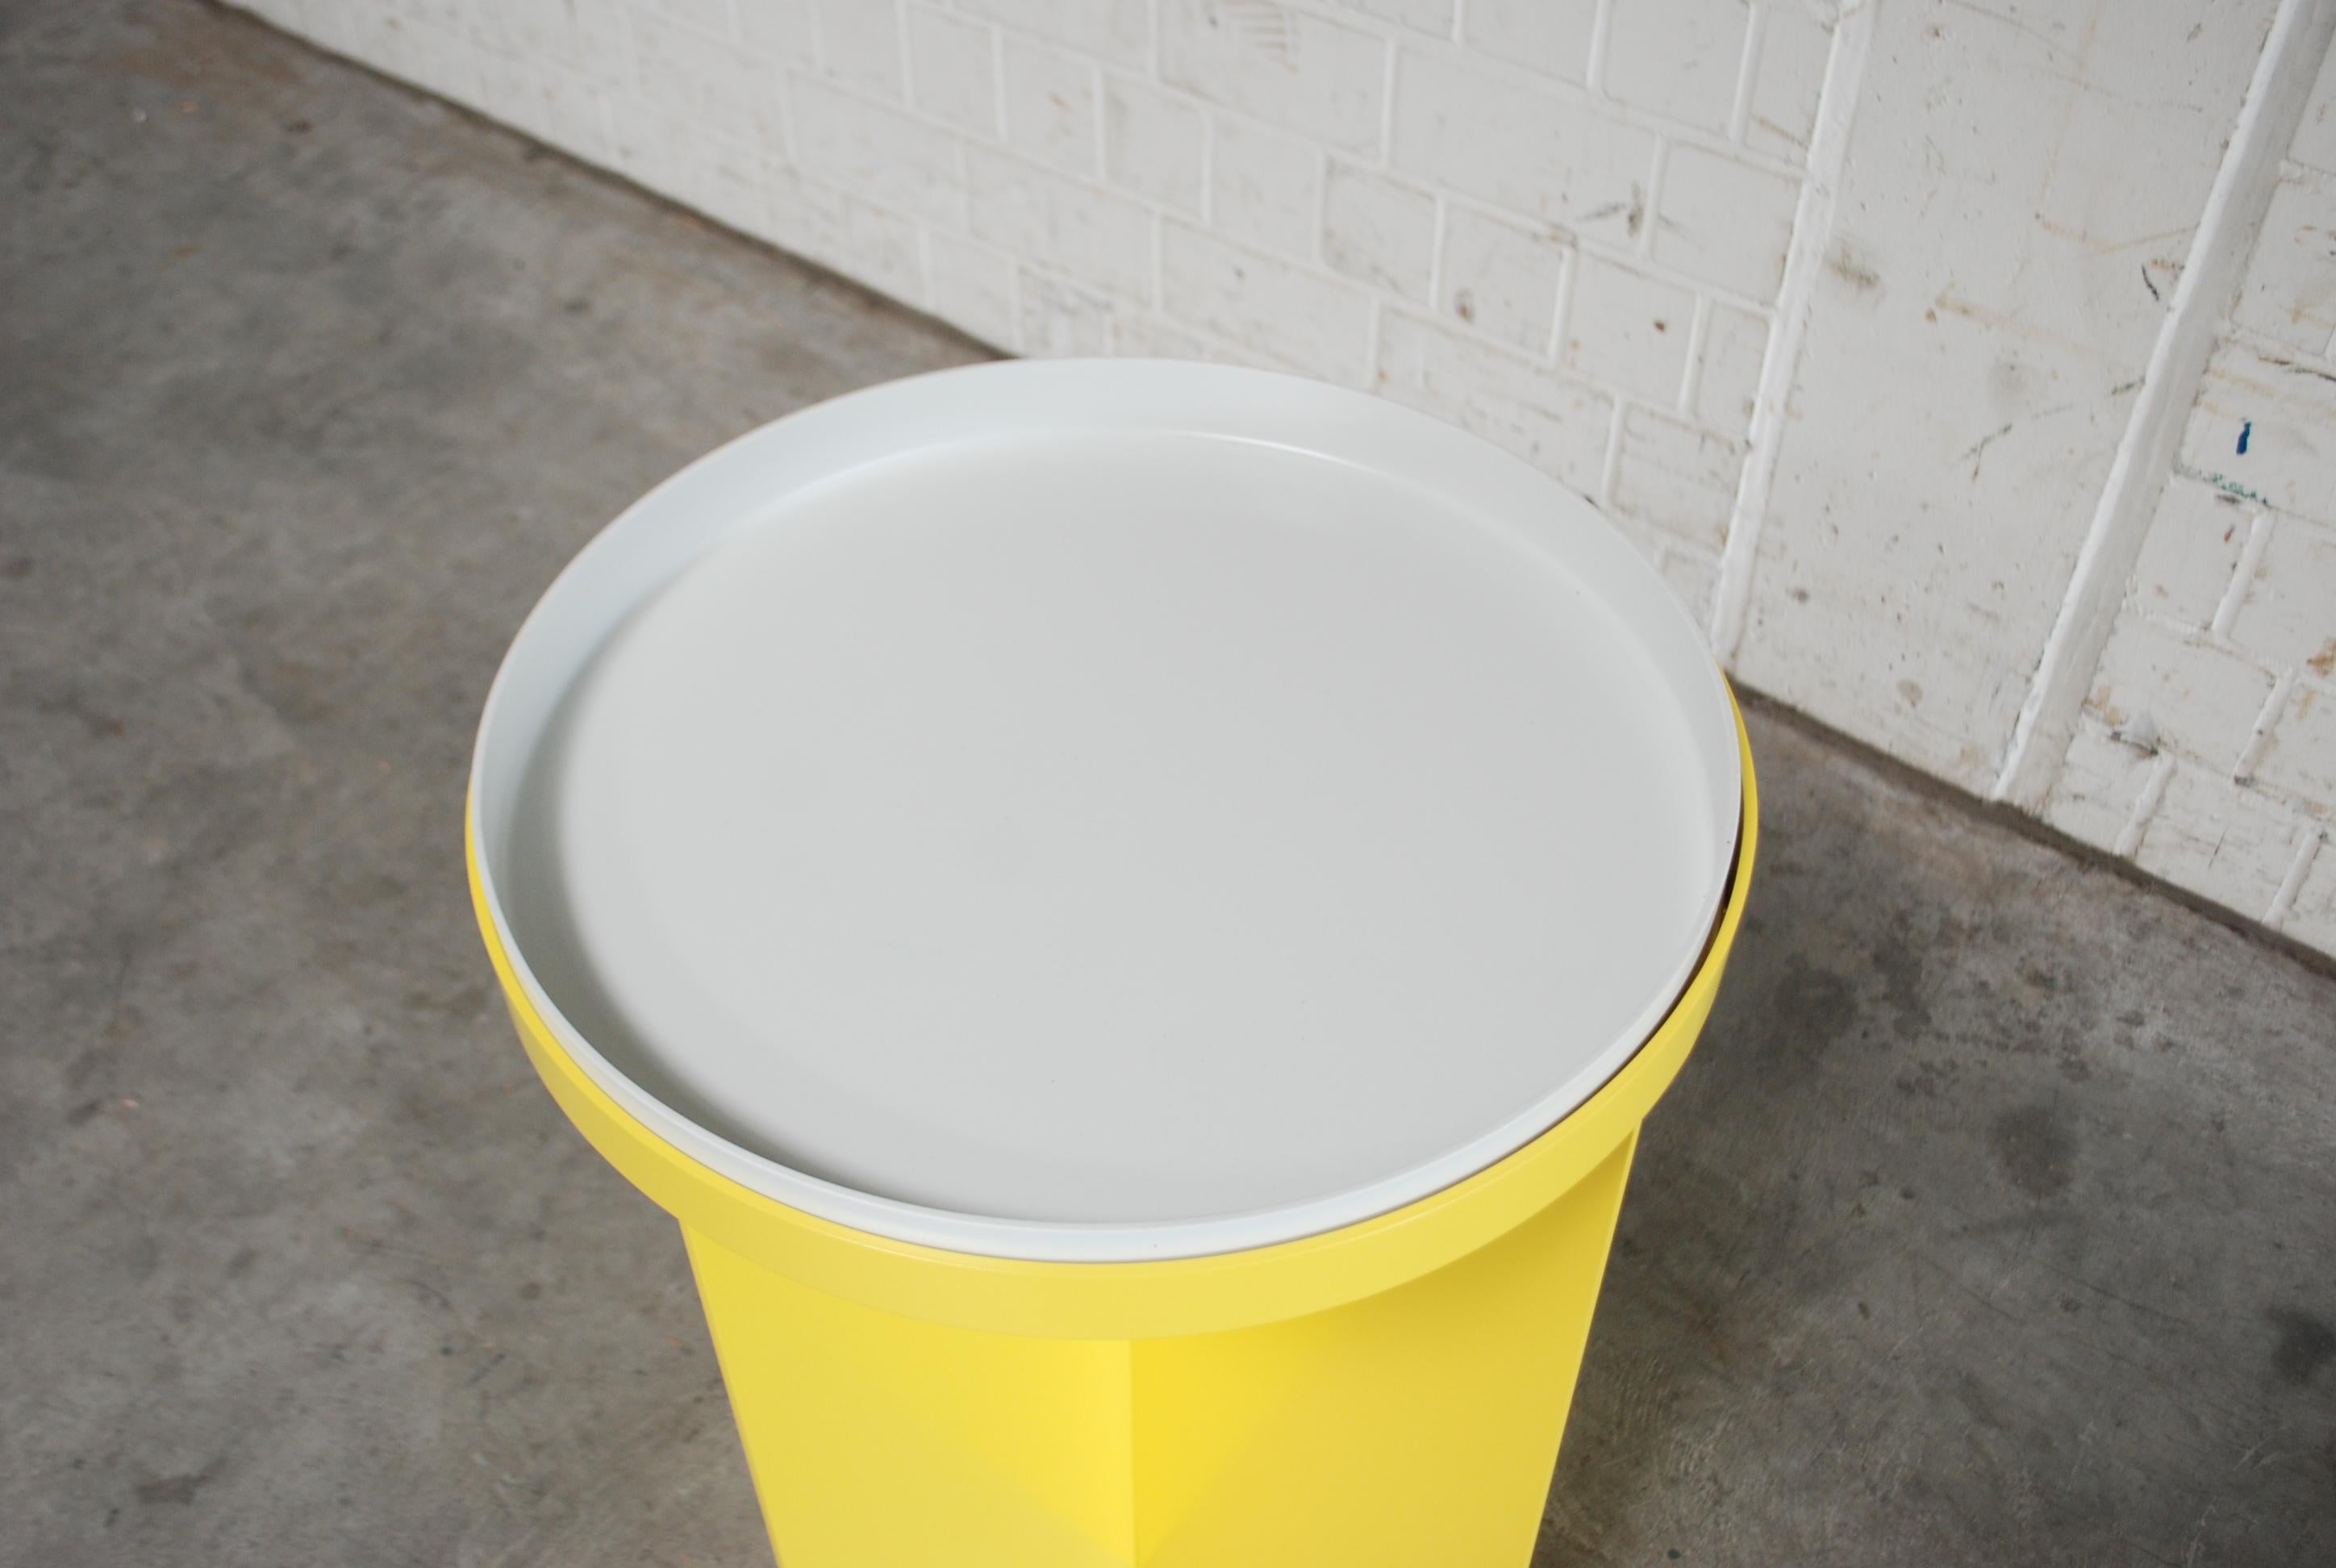 Minimalist Schellmann Art Furniture Minimal Conceptual Aluminium Yellow Tray Round Table